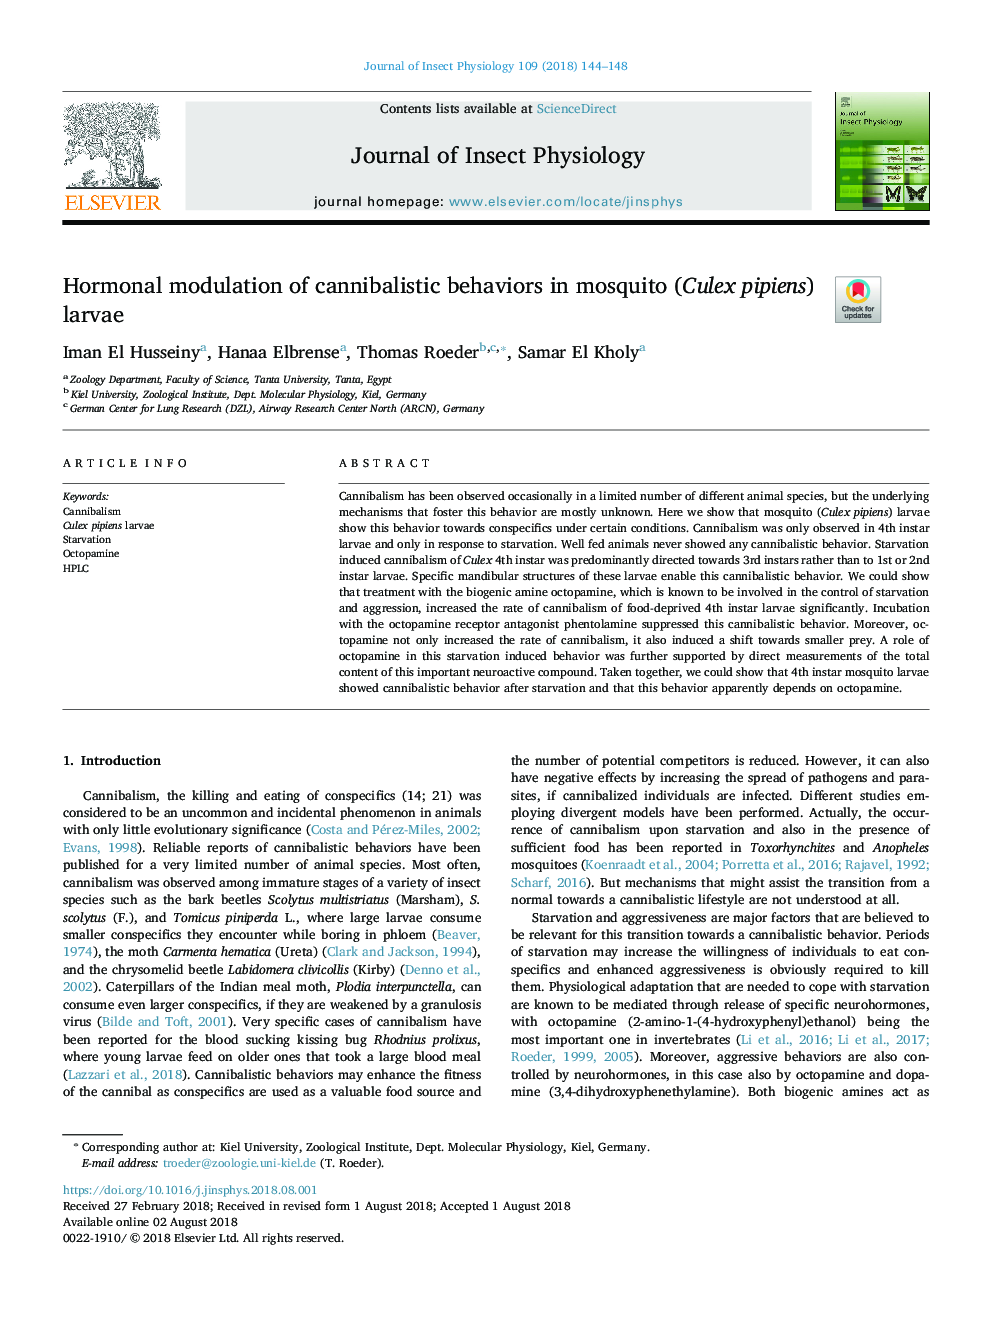 Hormonal modulation of cannibalistic behaviors in mosquito (Culex pipiens) larvae